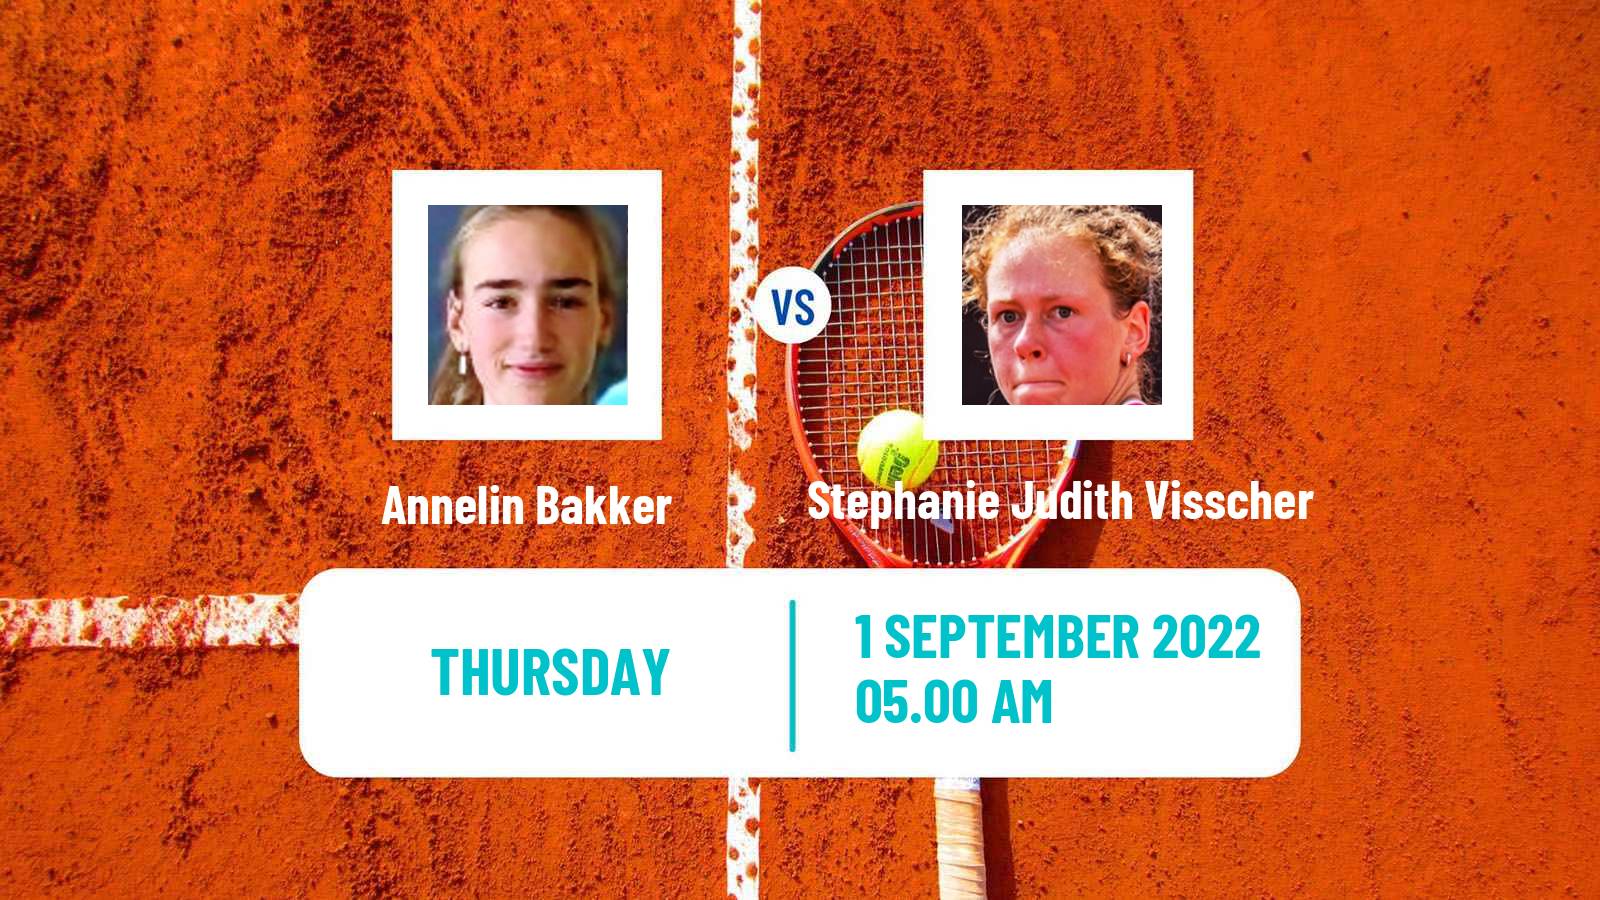 Tennis ITF Tournaments Annelin Bakker - Stephanie Judith Visscher